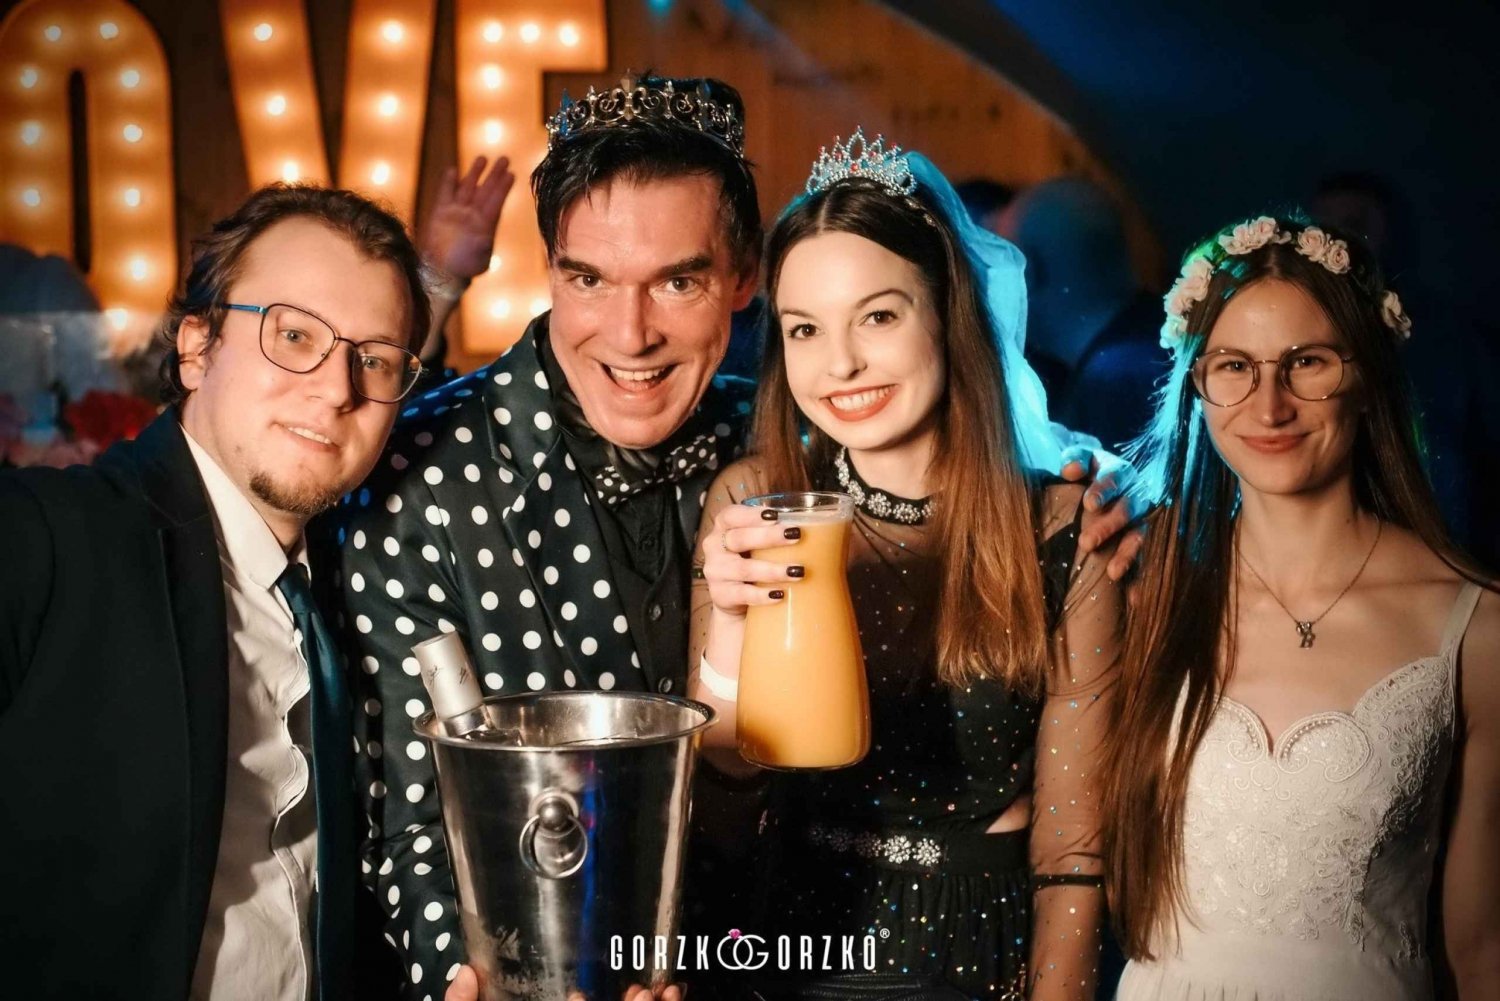 Gdańsk: Fiesta de boda polaca con copa de bienvenida